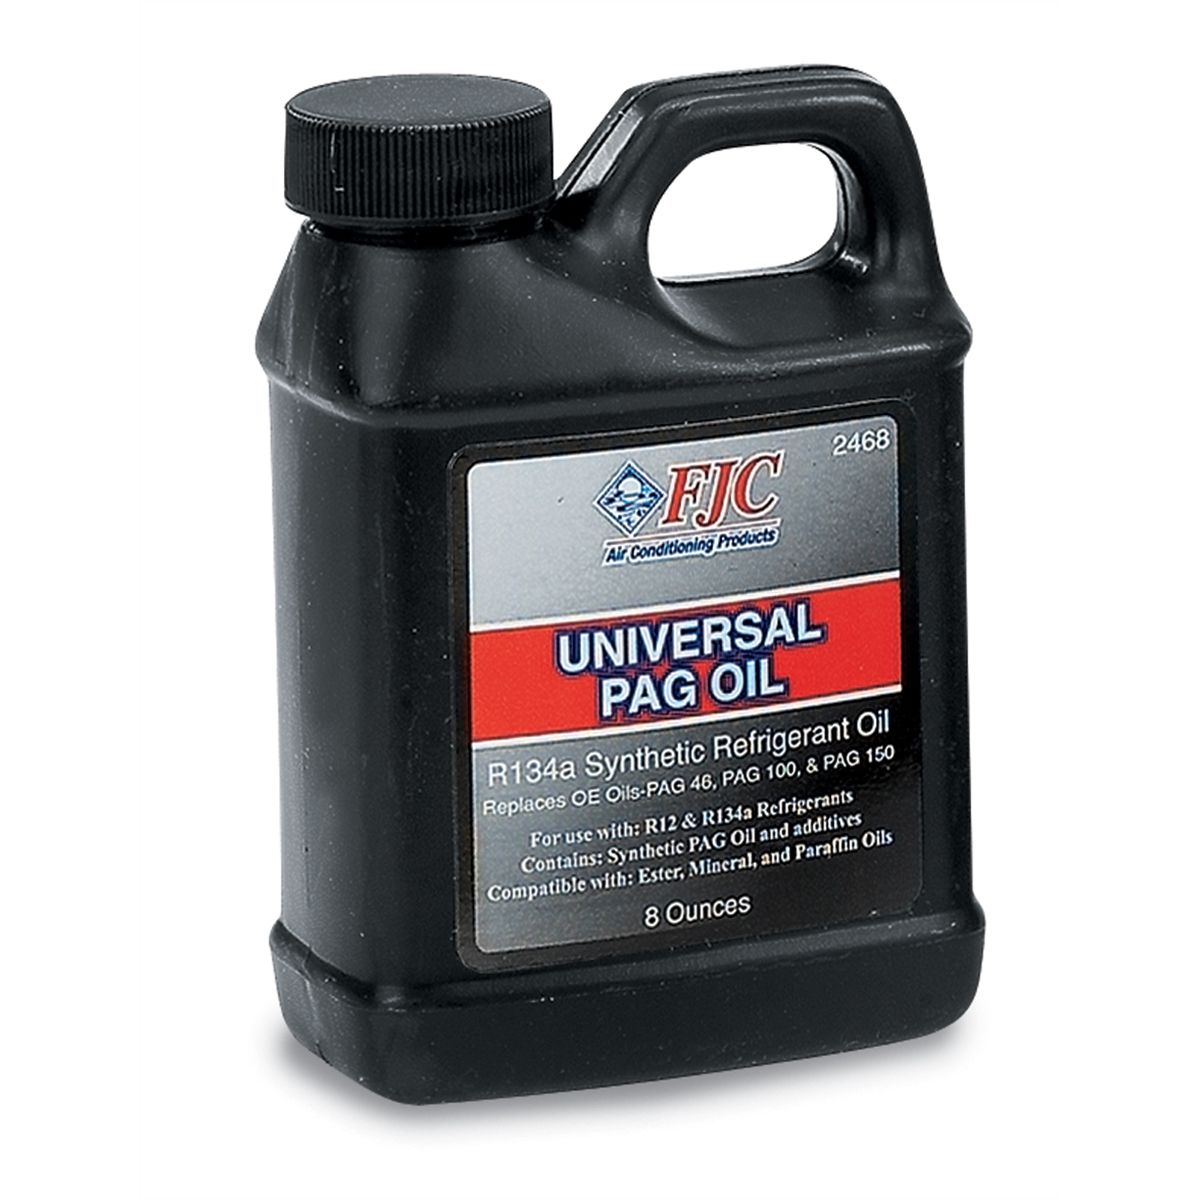 Universal PAG Oil - 8 Oz